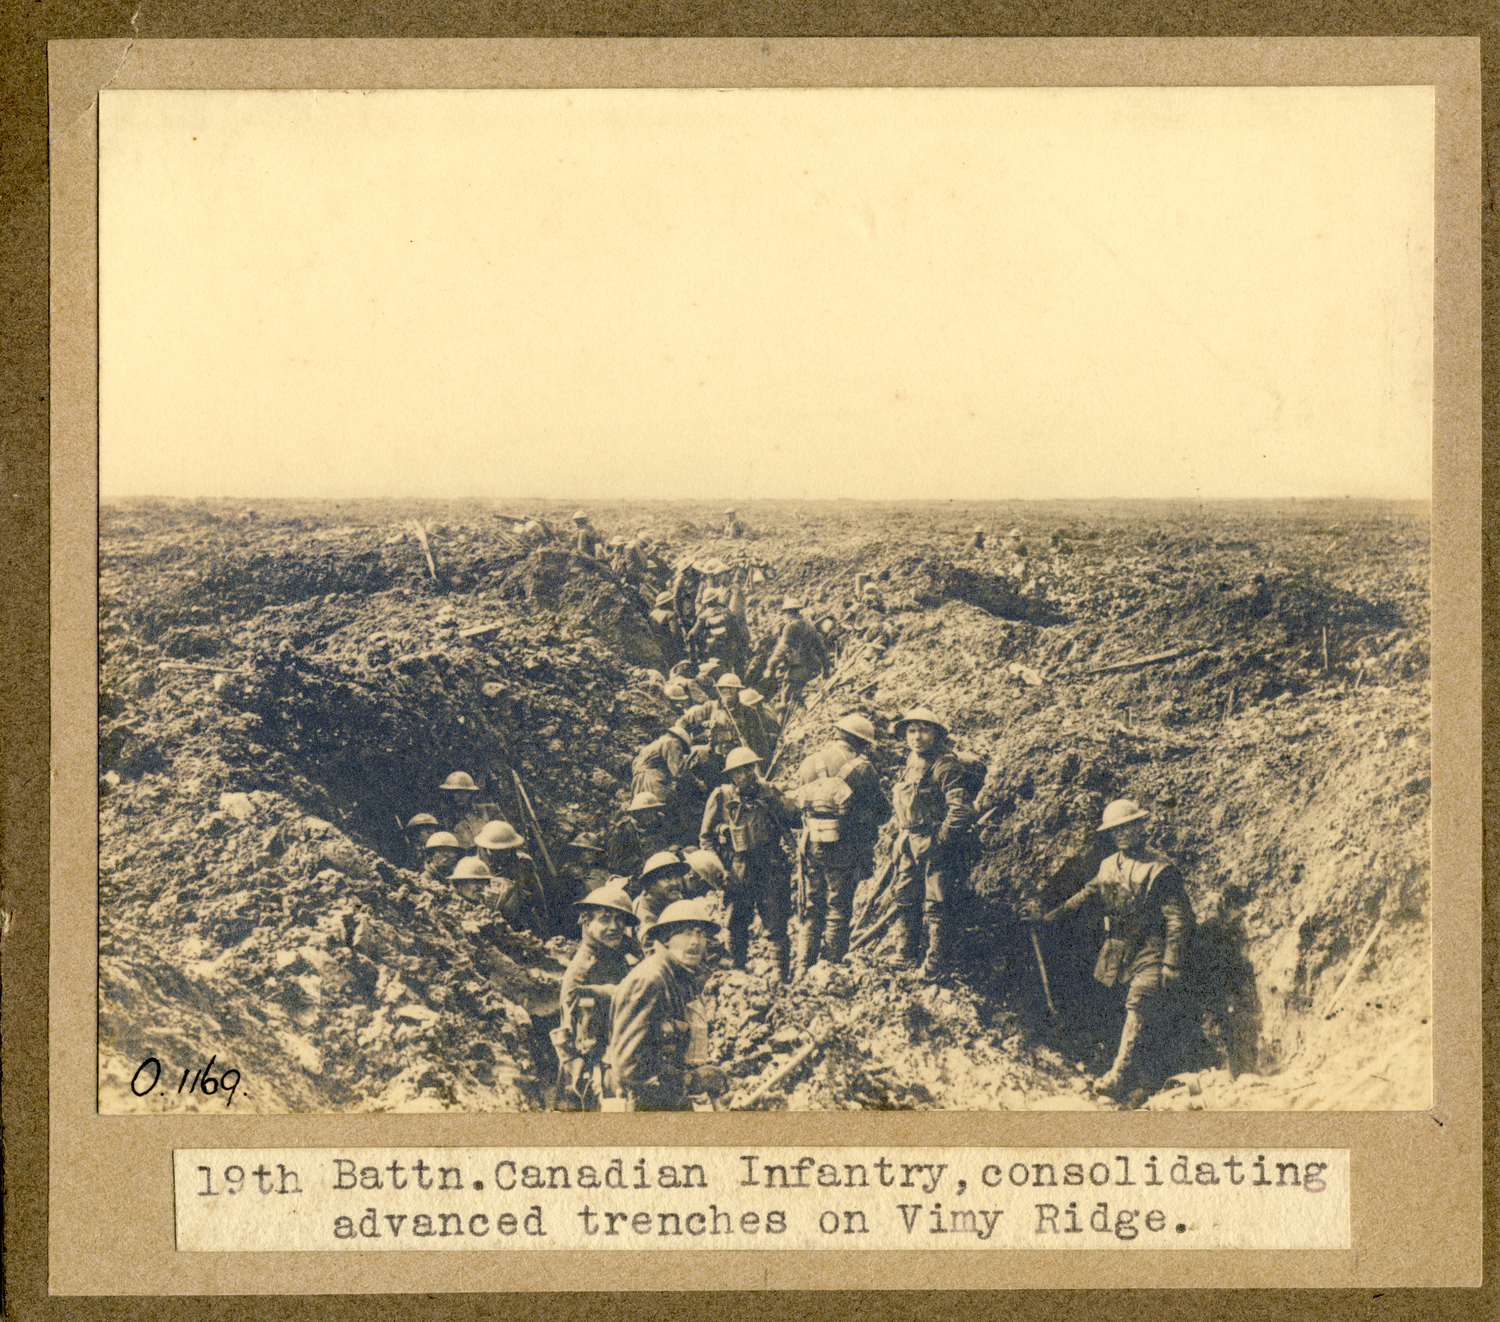 Vimy Ridge, 1917